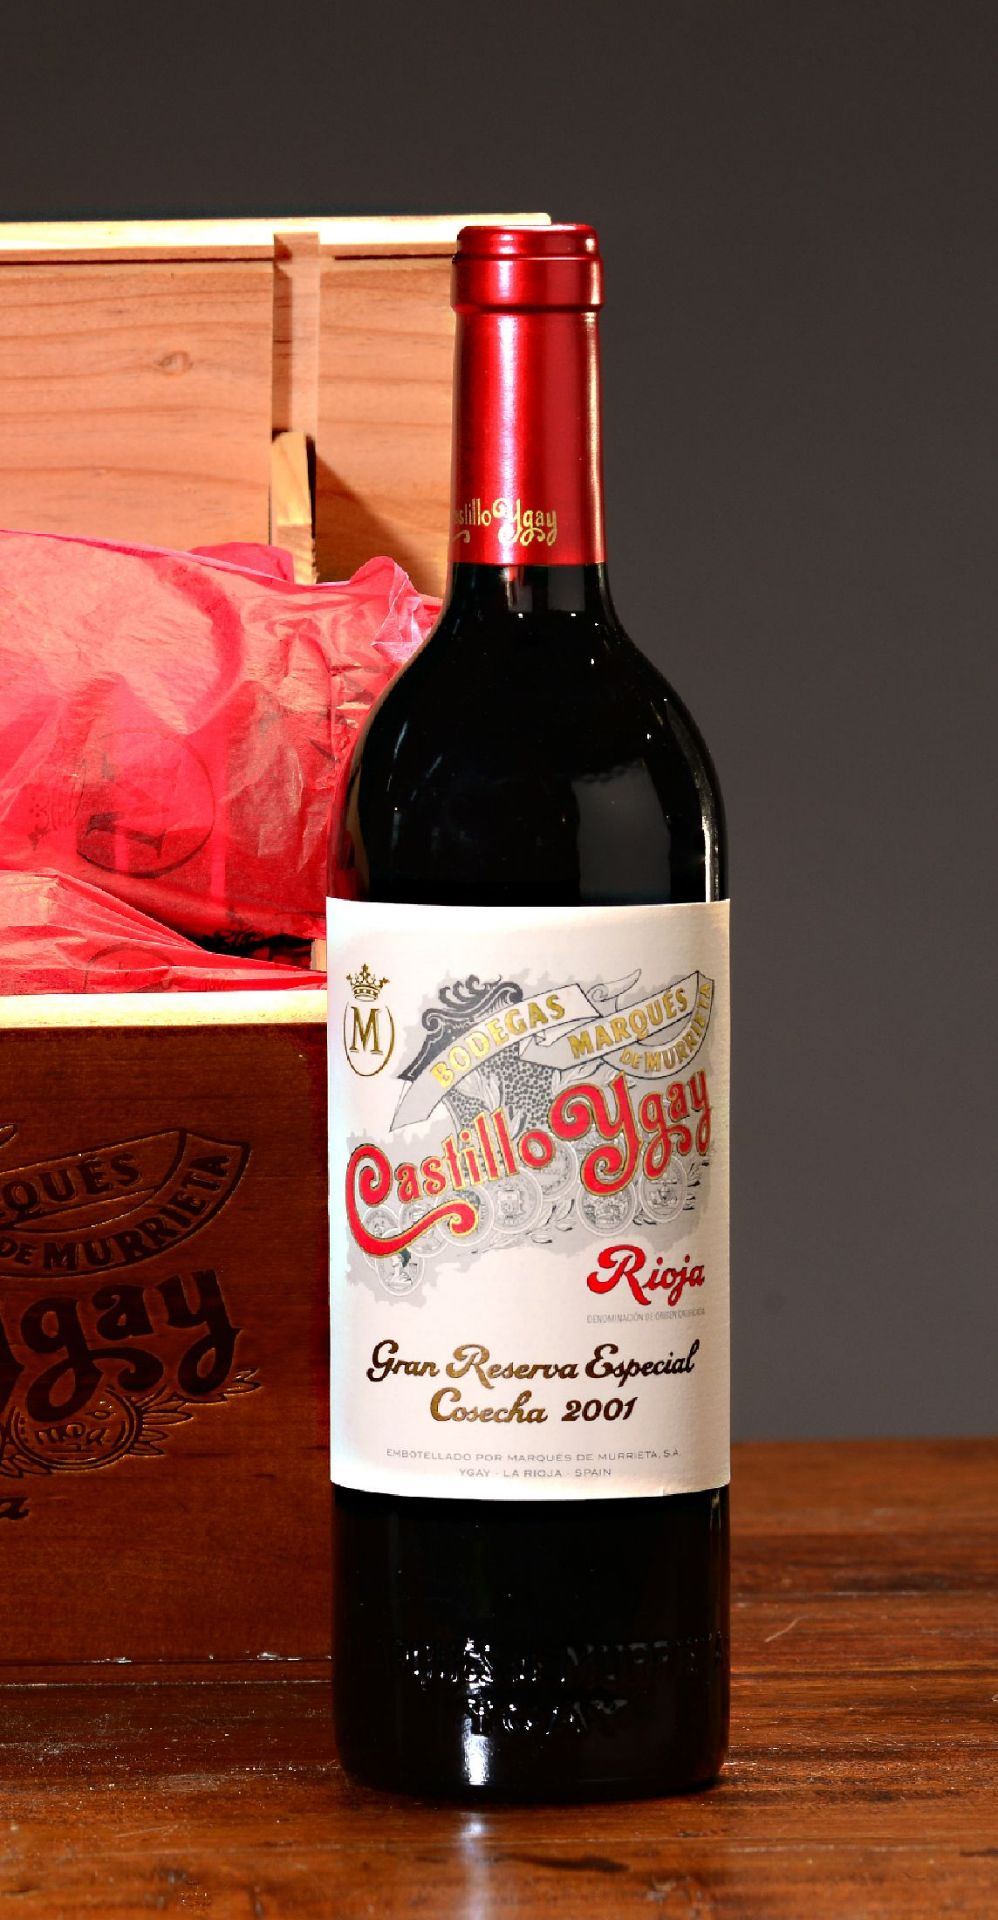 6 Flaschen 2001 Castillo Ygay im orig. Karton ,  Rioja, je - Bild 2 aus 2